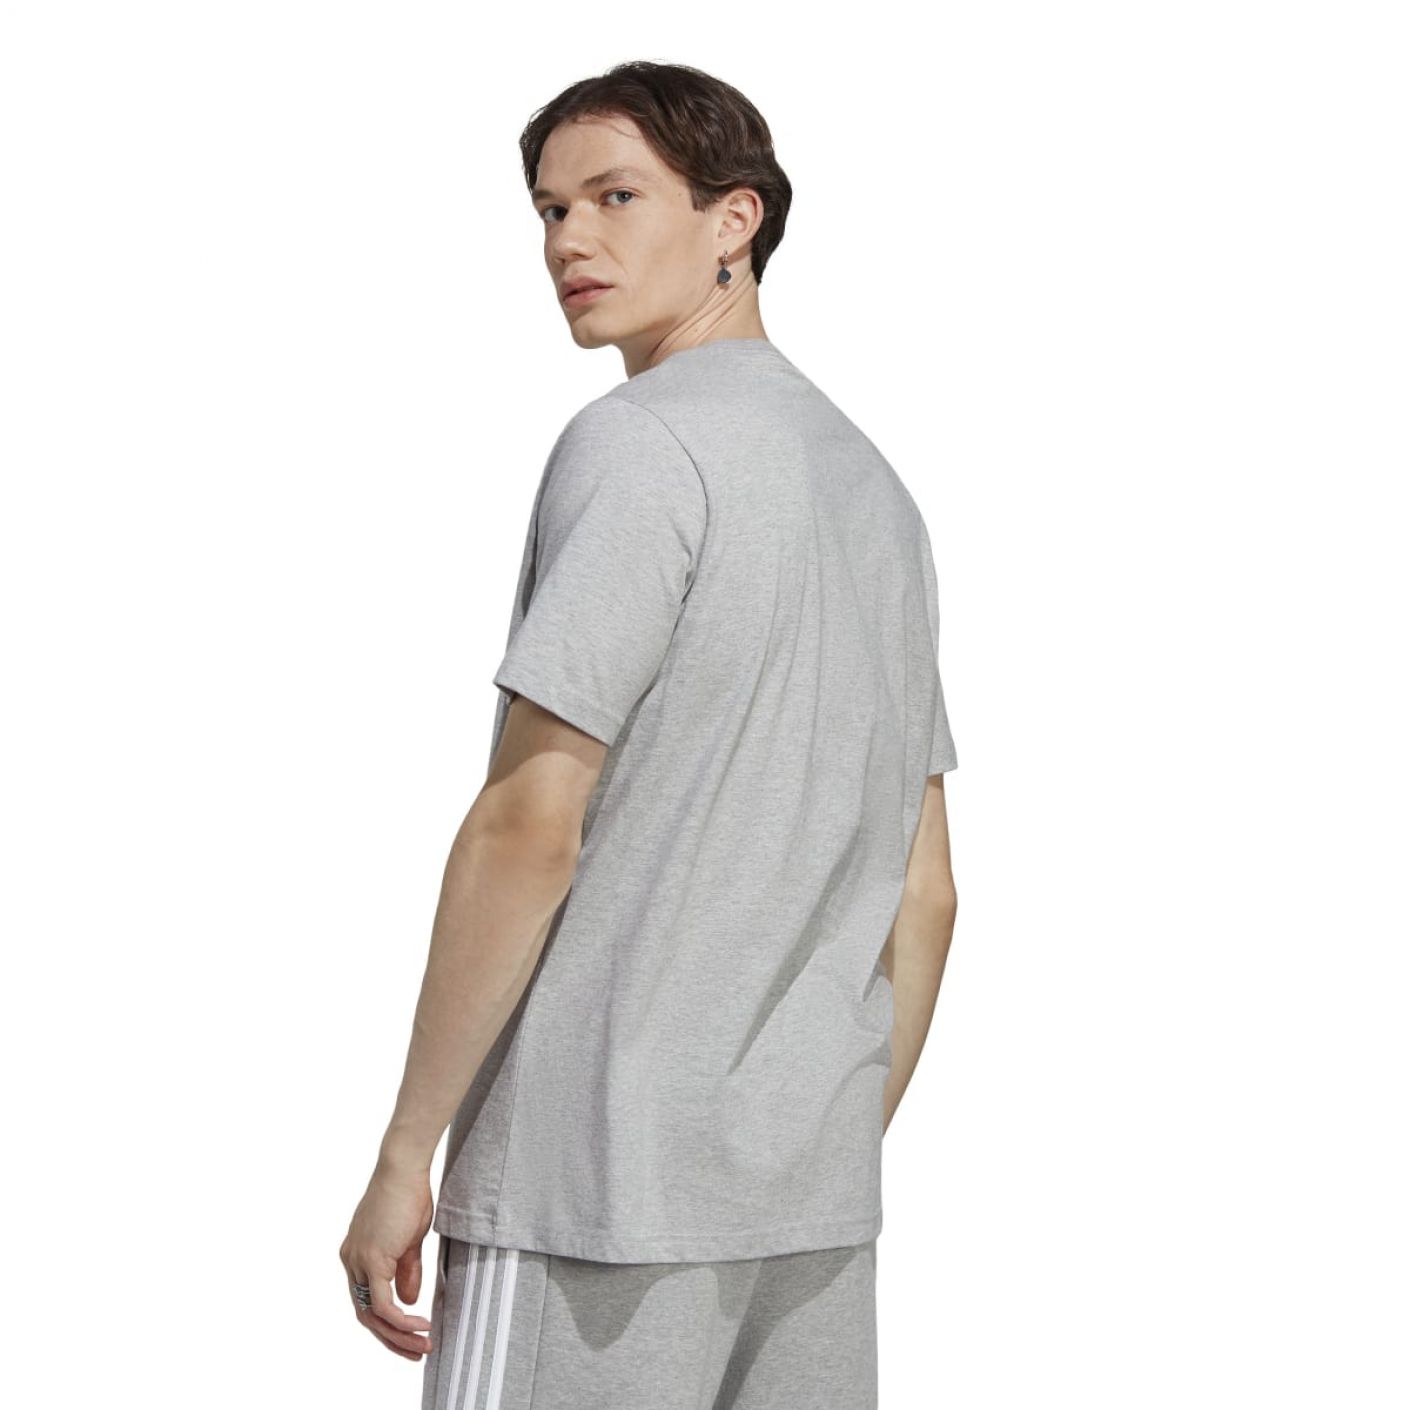 Adidas T-shirt Light Grey da Uomo